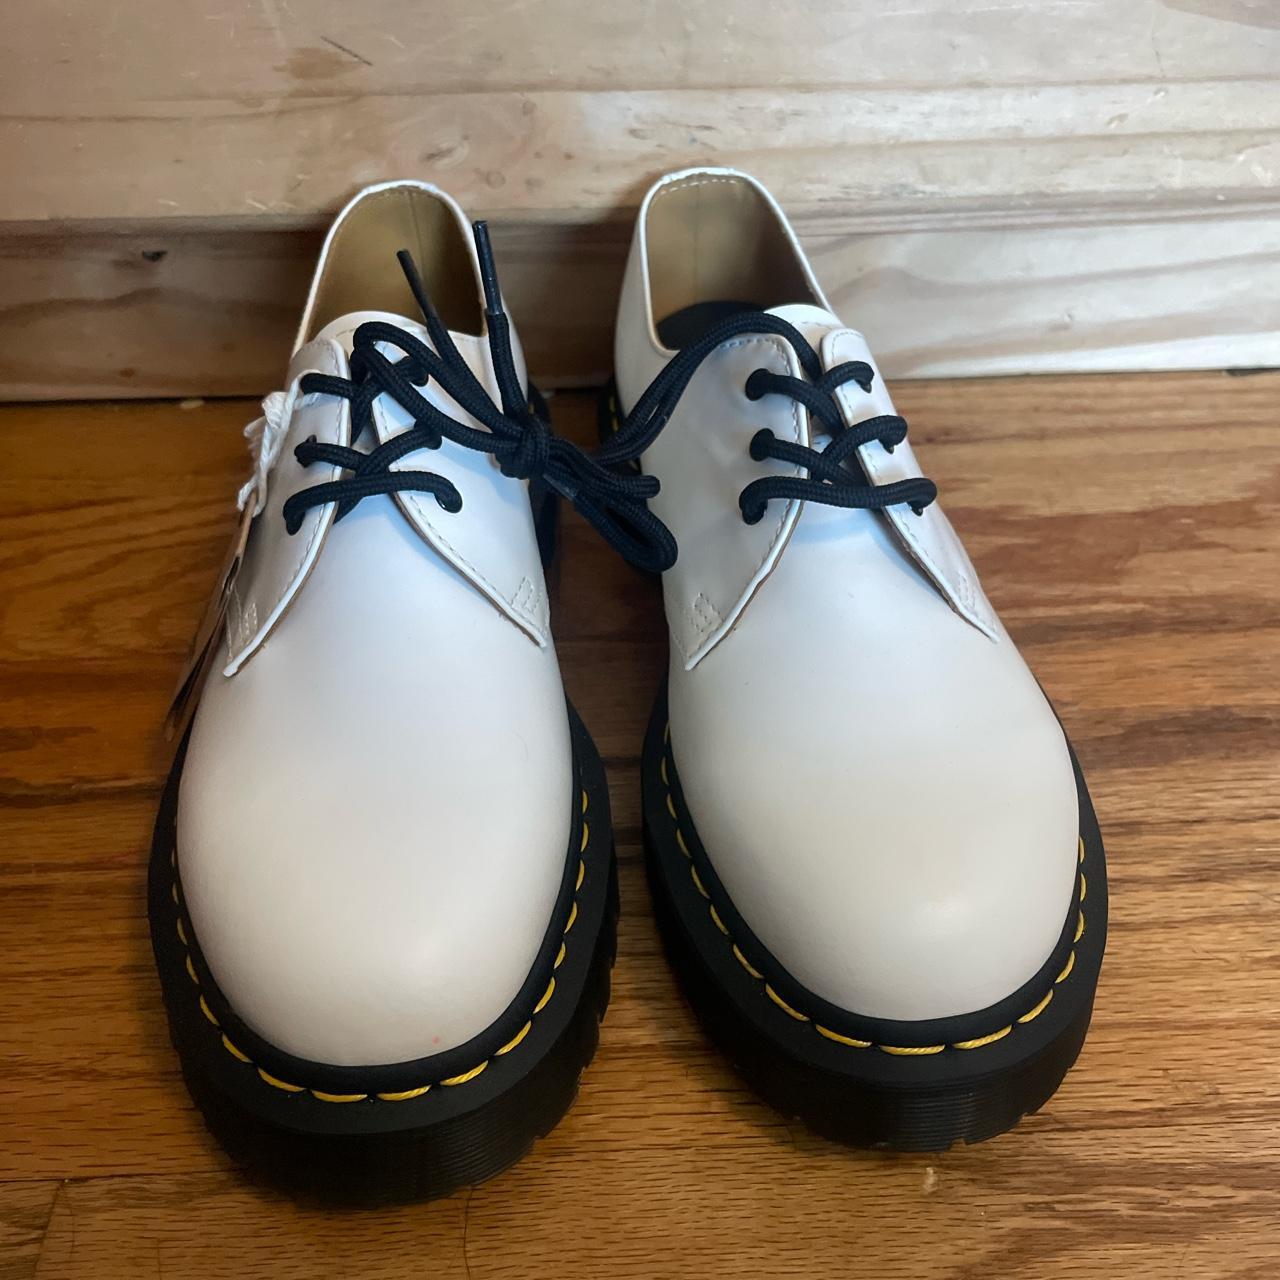 Dr. Martens 1461 Smooth Leather Platform Shoes Men’s... - Depop